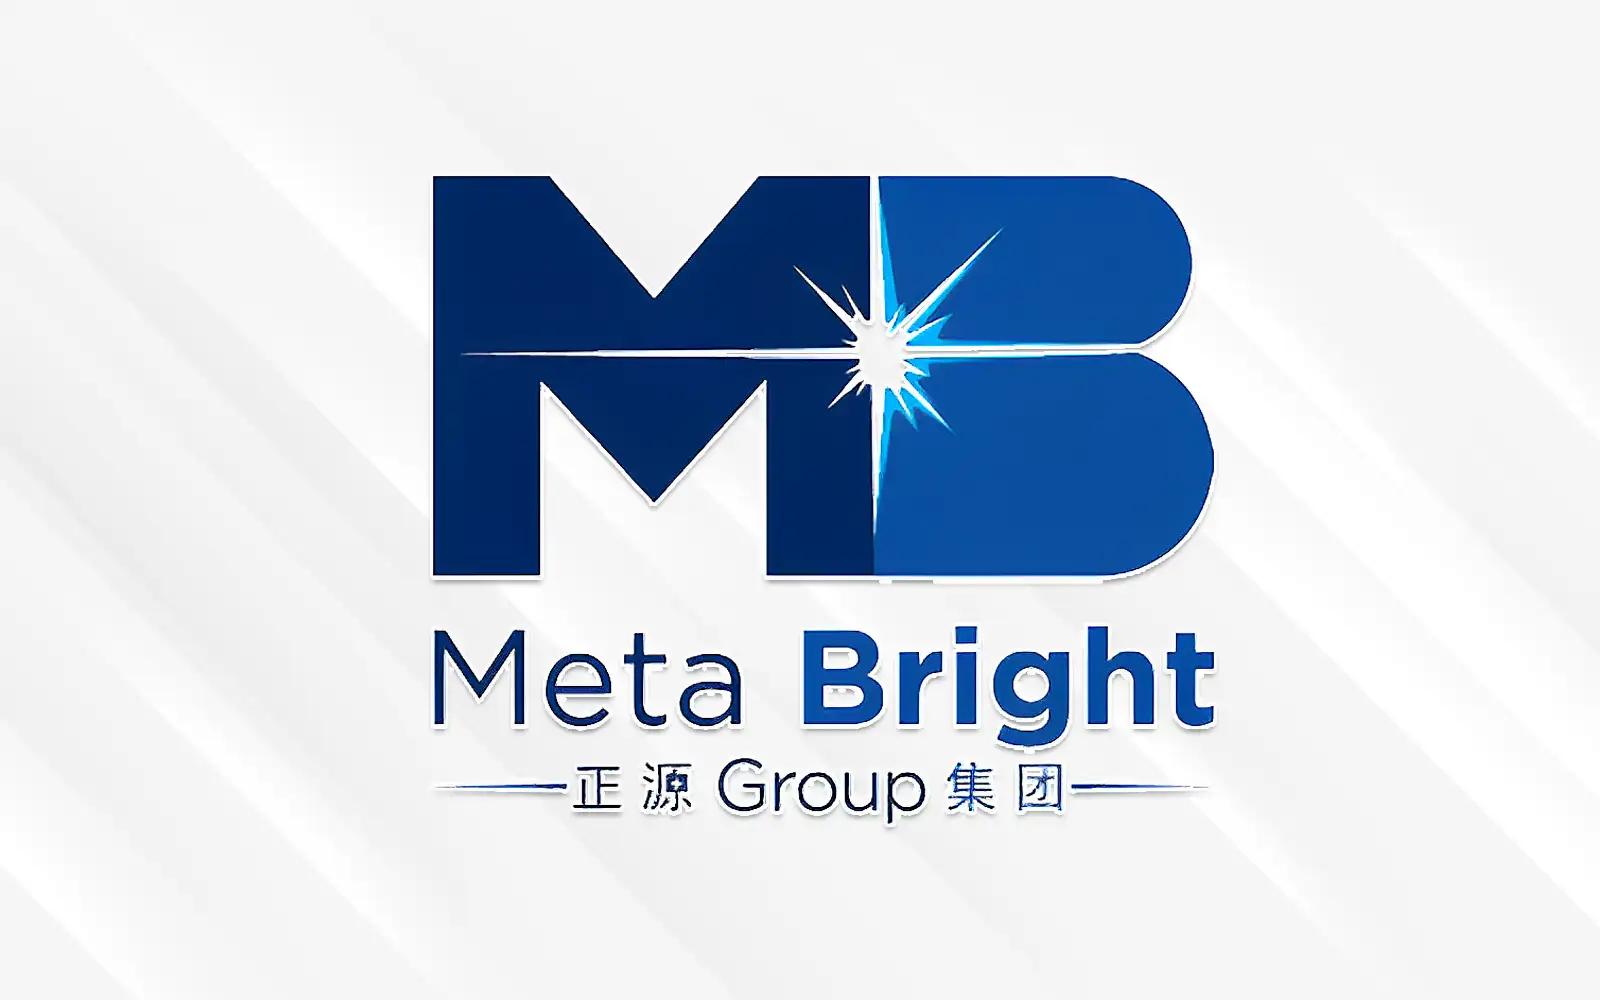 Meta Bright Group